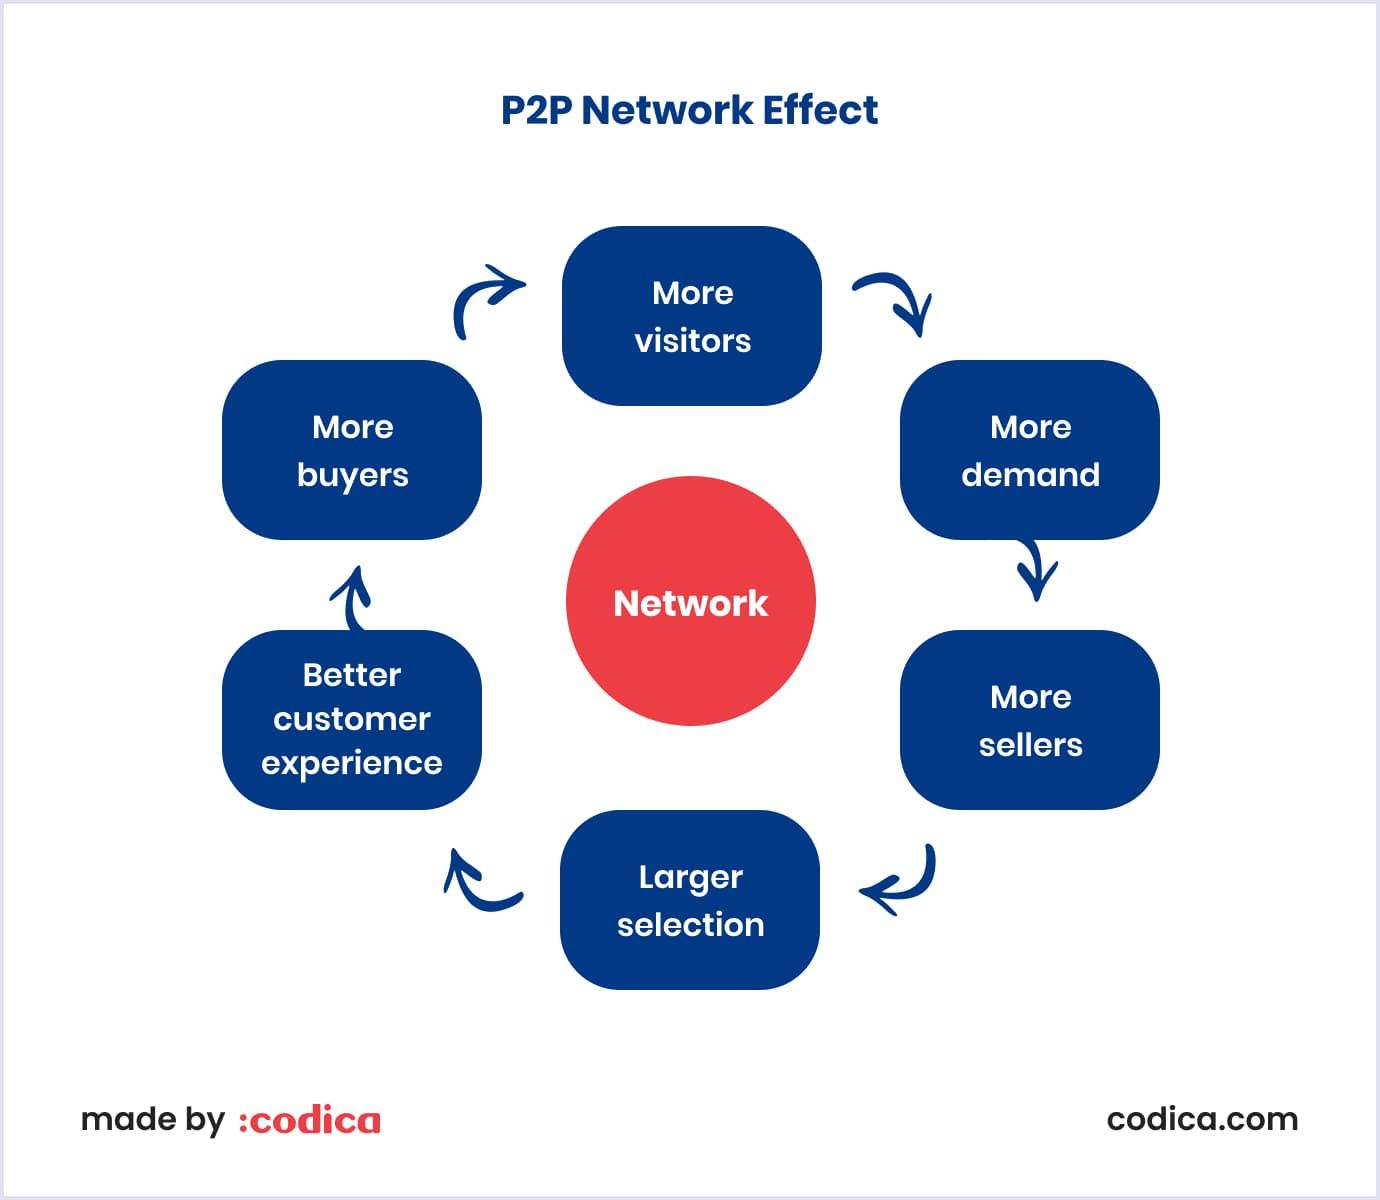 peer-to-peer marketplace platform network effect